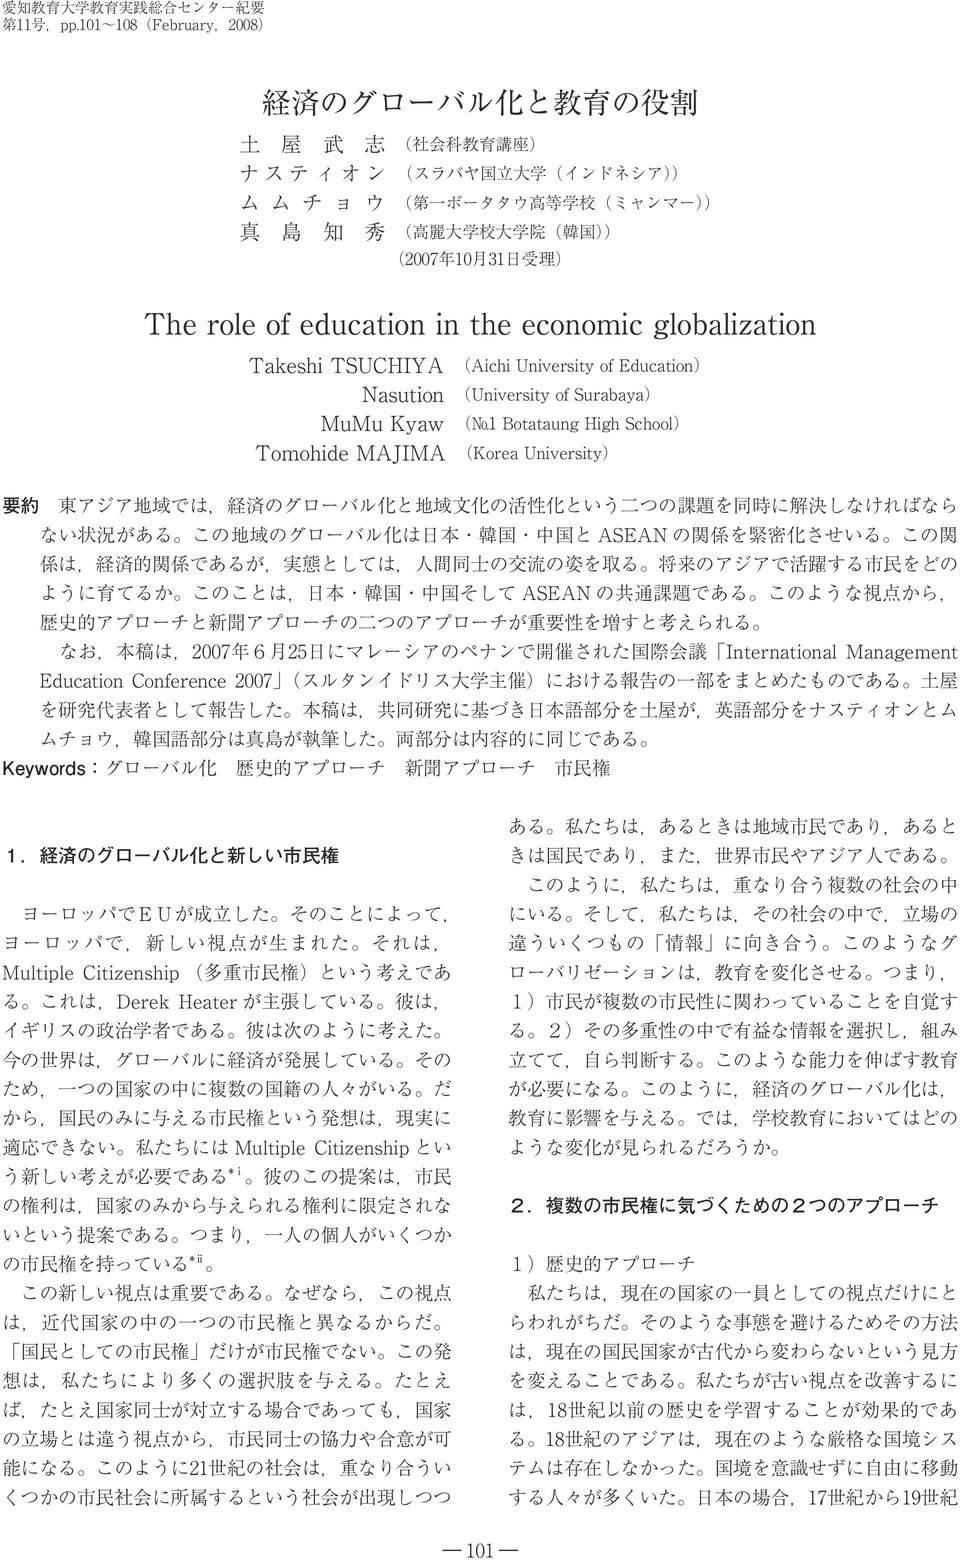 高 麗 大 学 校 大 学 院 ( 韓 国 )) (2007 年 10 月 31 日 受 理 ) The role of education in the economic globalization Takeshi TSUCHIYA (Aichi University of Education) Nasution (University of Surabaya) MuMu Kyaw ( 1